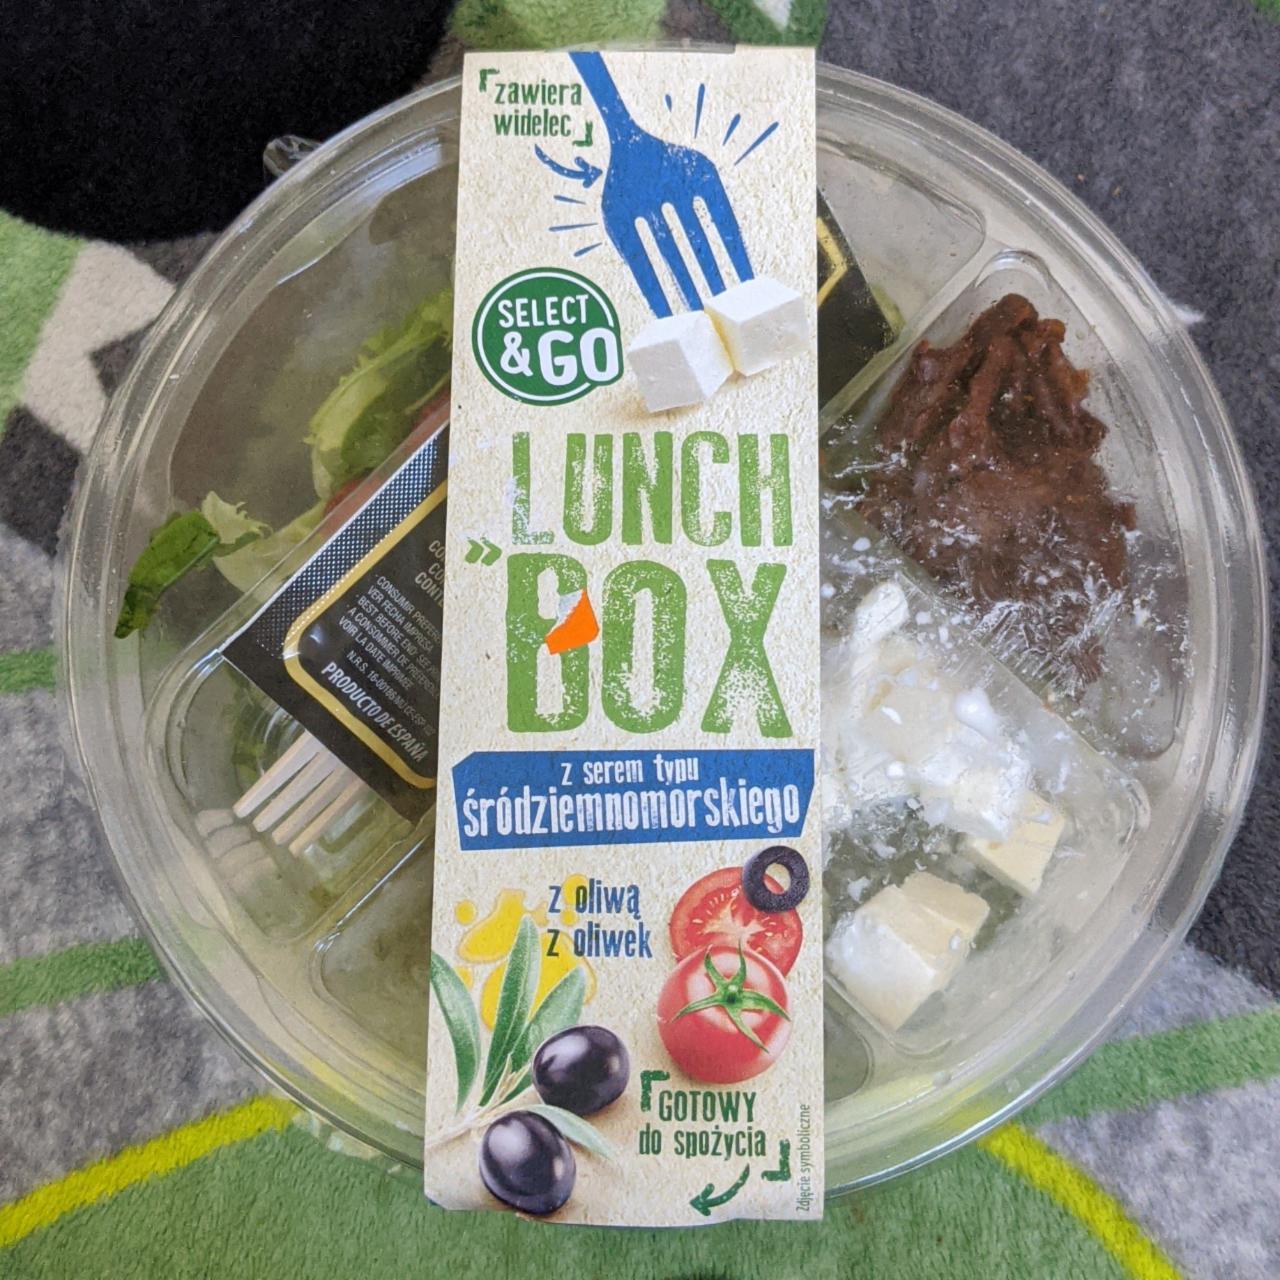 Фото - Lunchbox z serem typu śródziemnomorksiego Select&Go